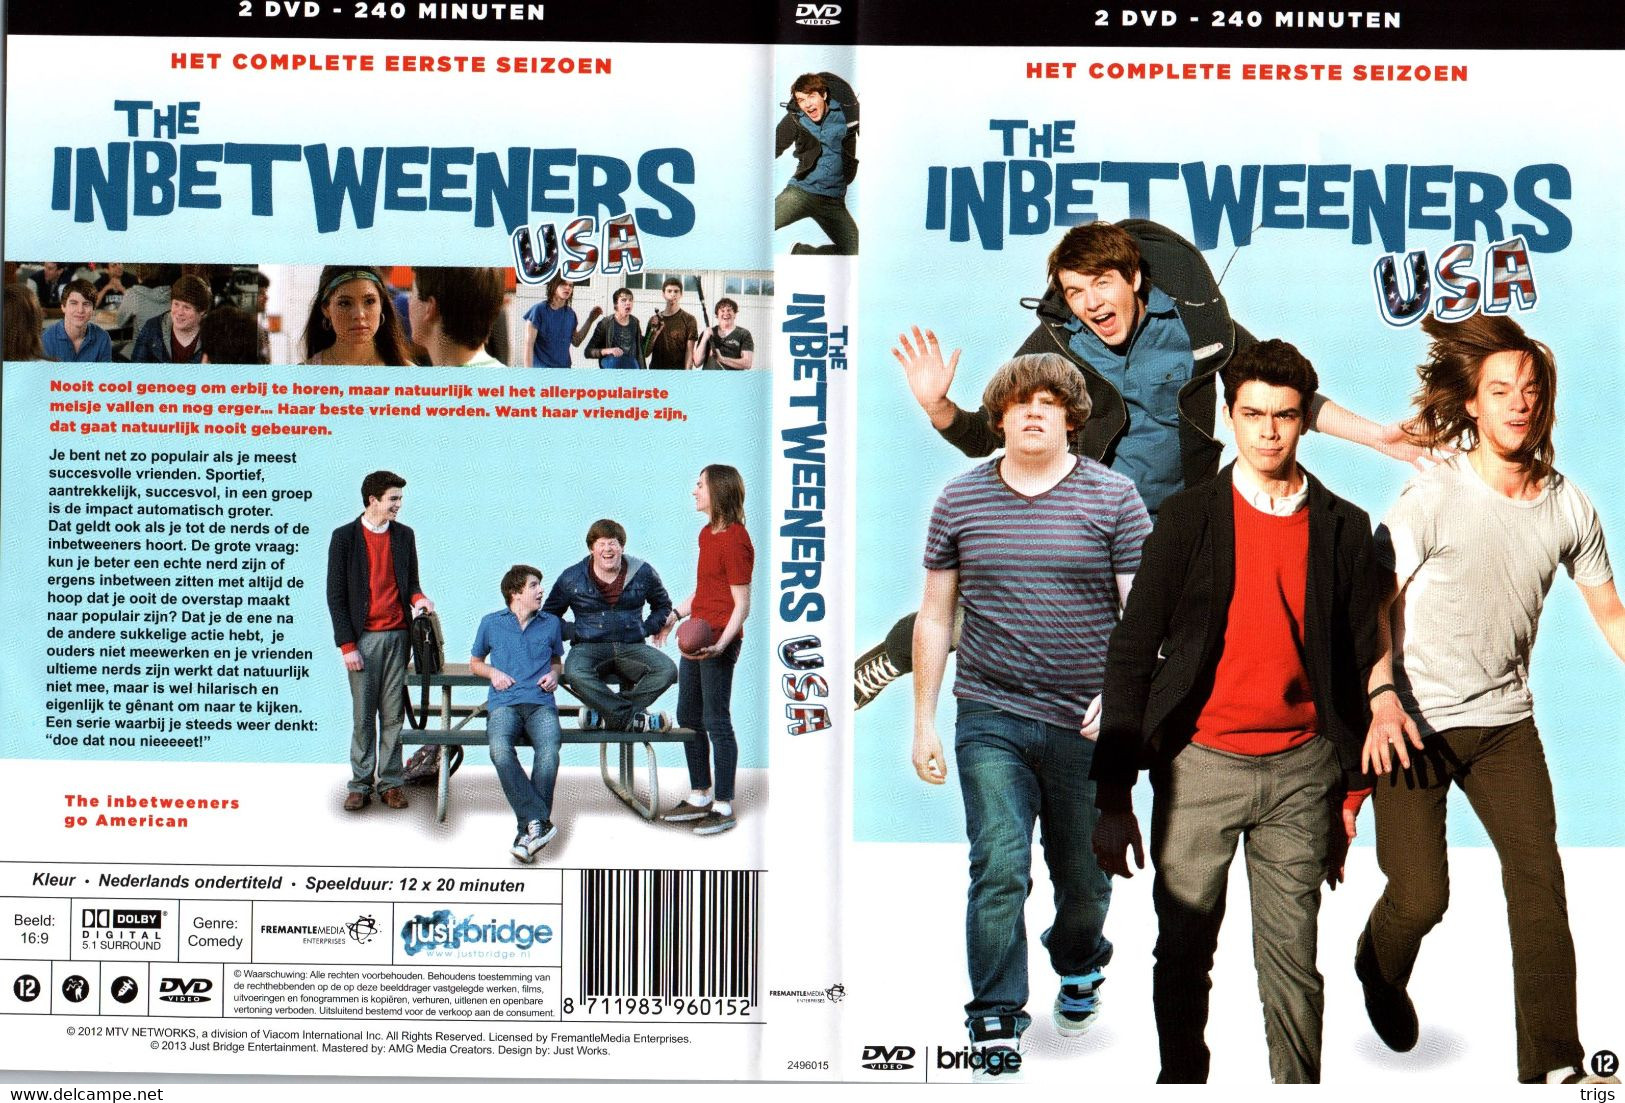 DVD - The Inbetweeners USA: Seizoen 1 (2 DISCS) - TV-Reeksen En Programma's